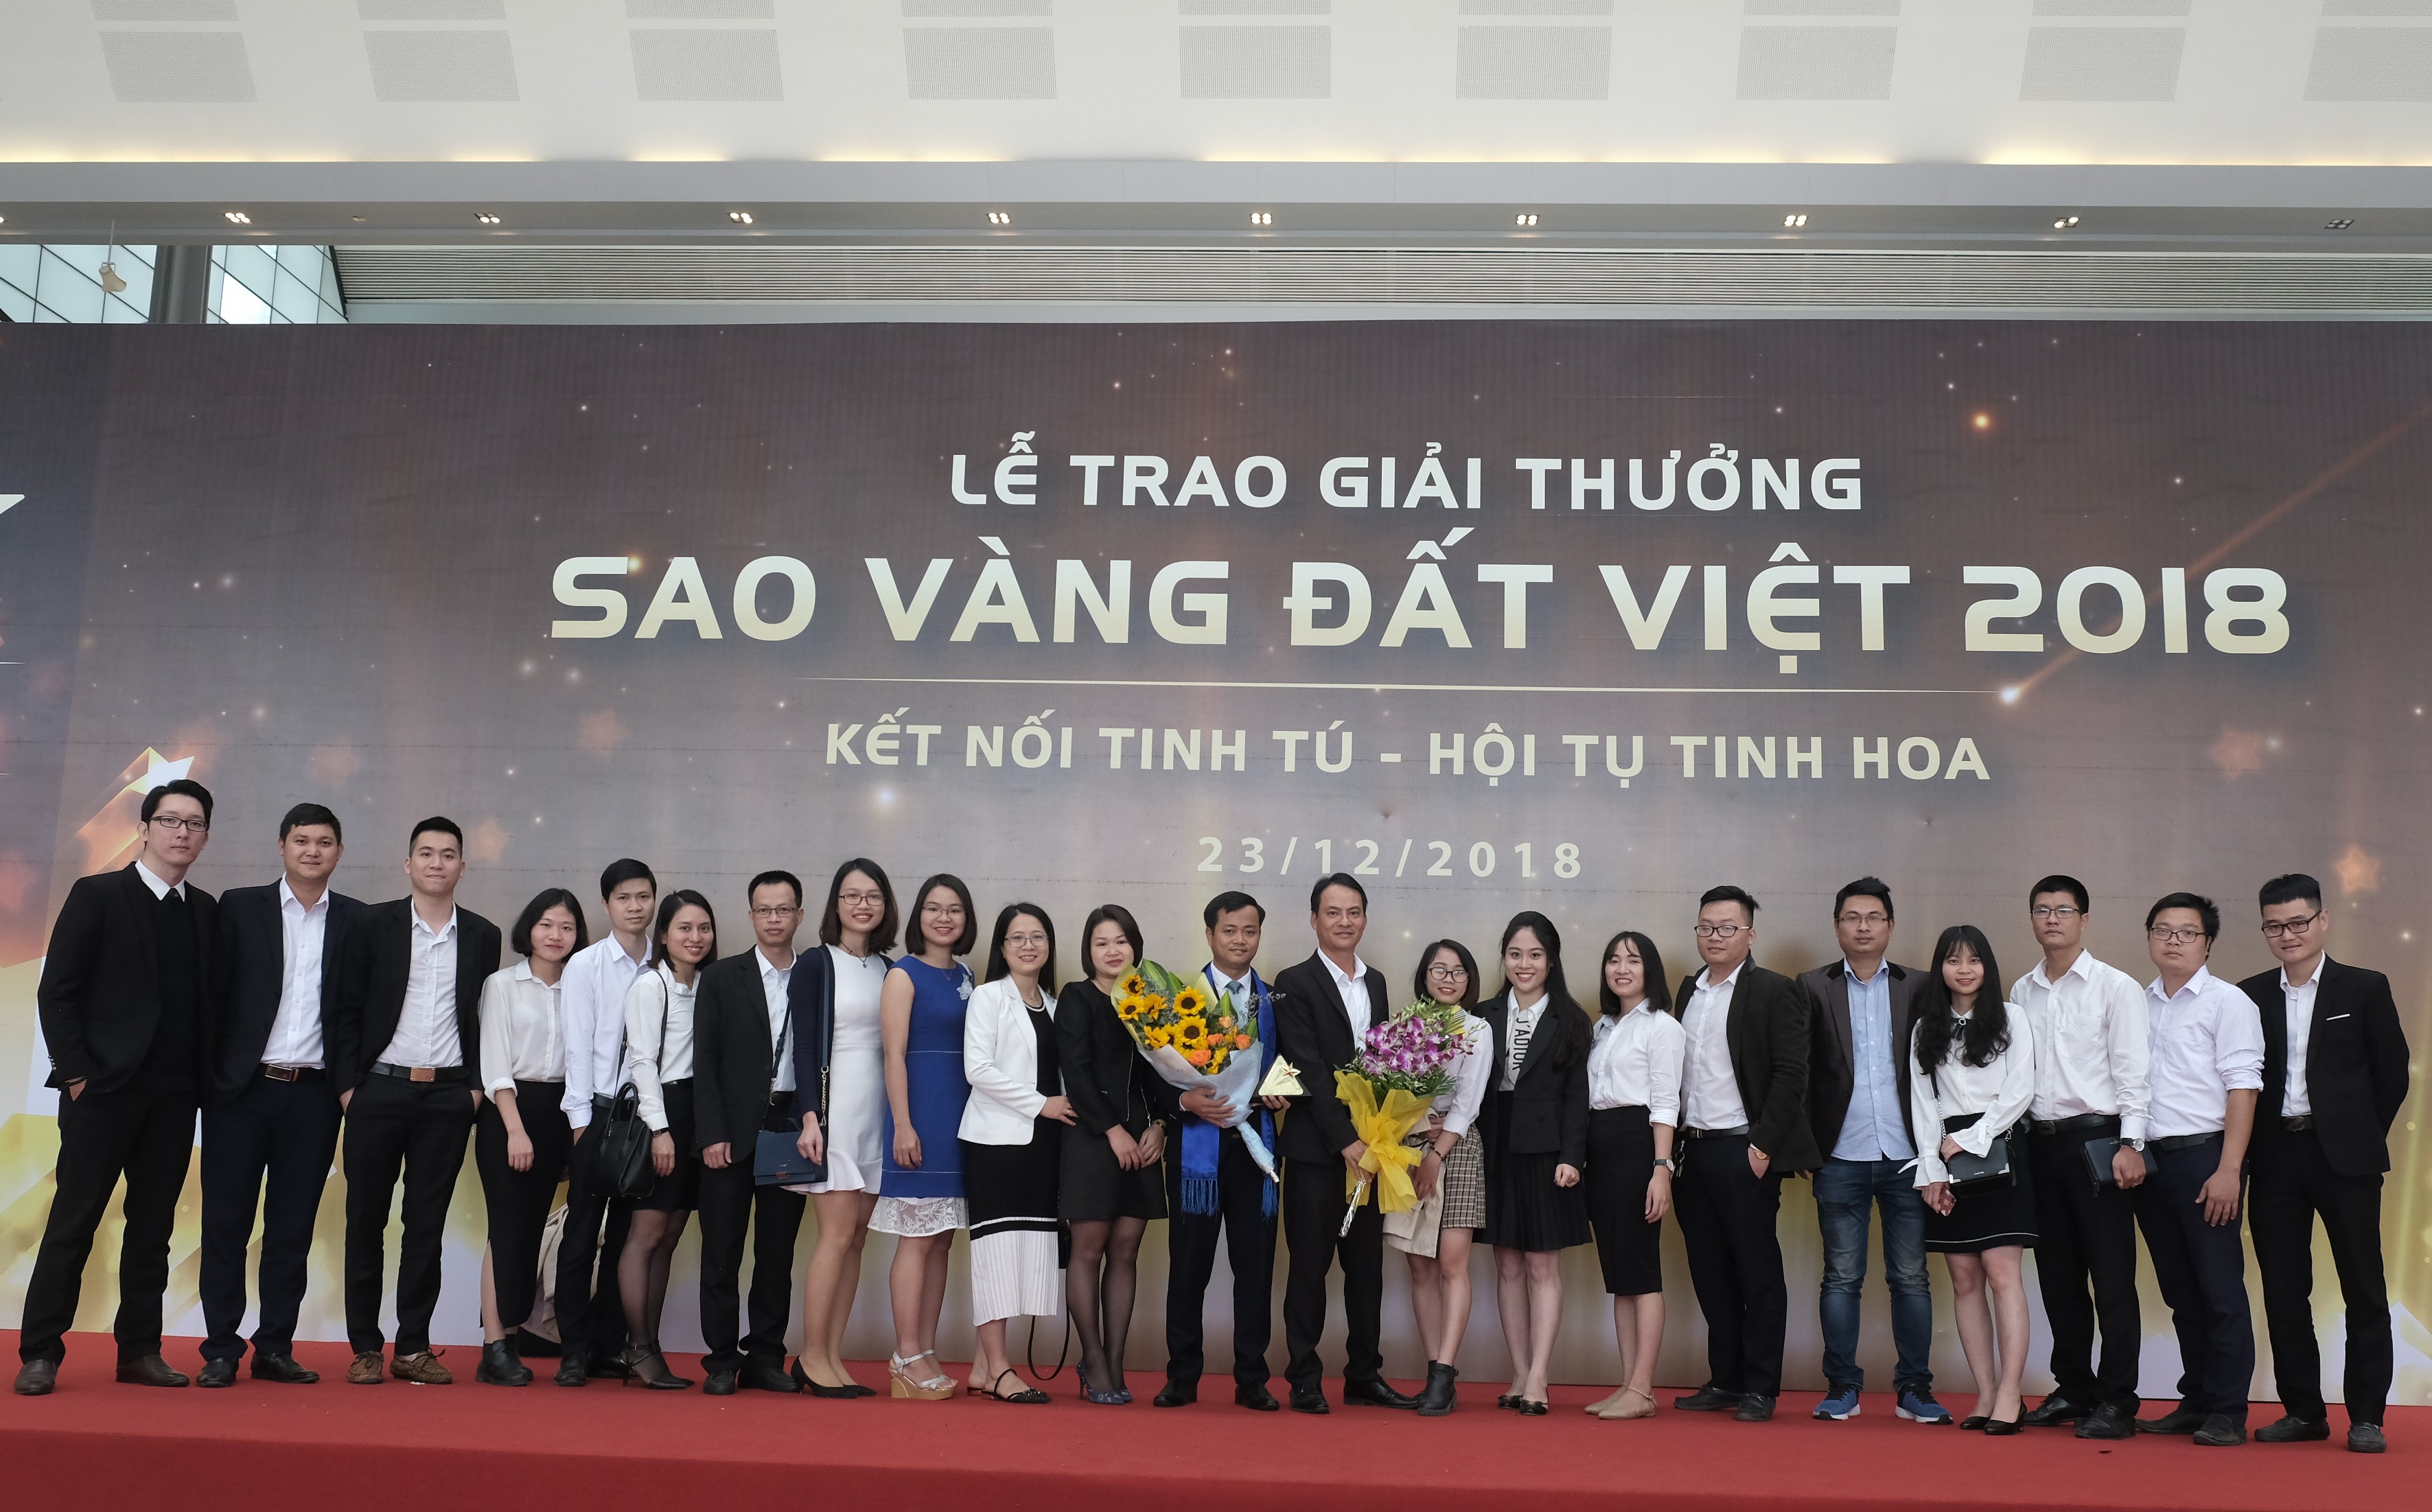 FSI đã chính thức đón nhận cúp vàng và chứng nhận thương hiệu Sao vàng Đất Việt 2018